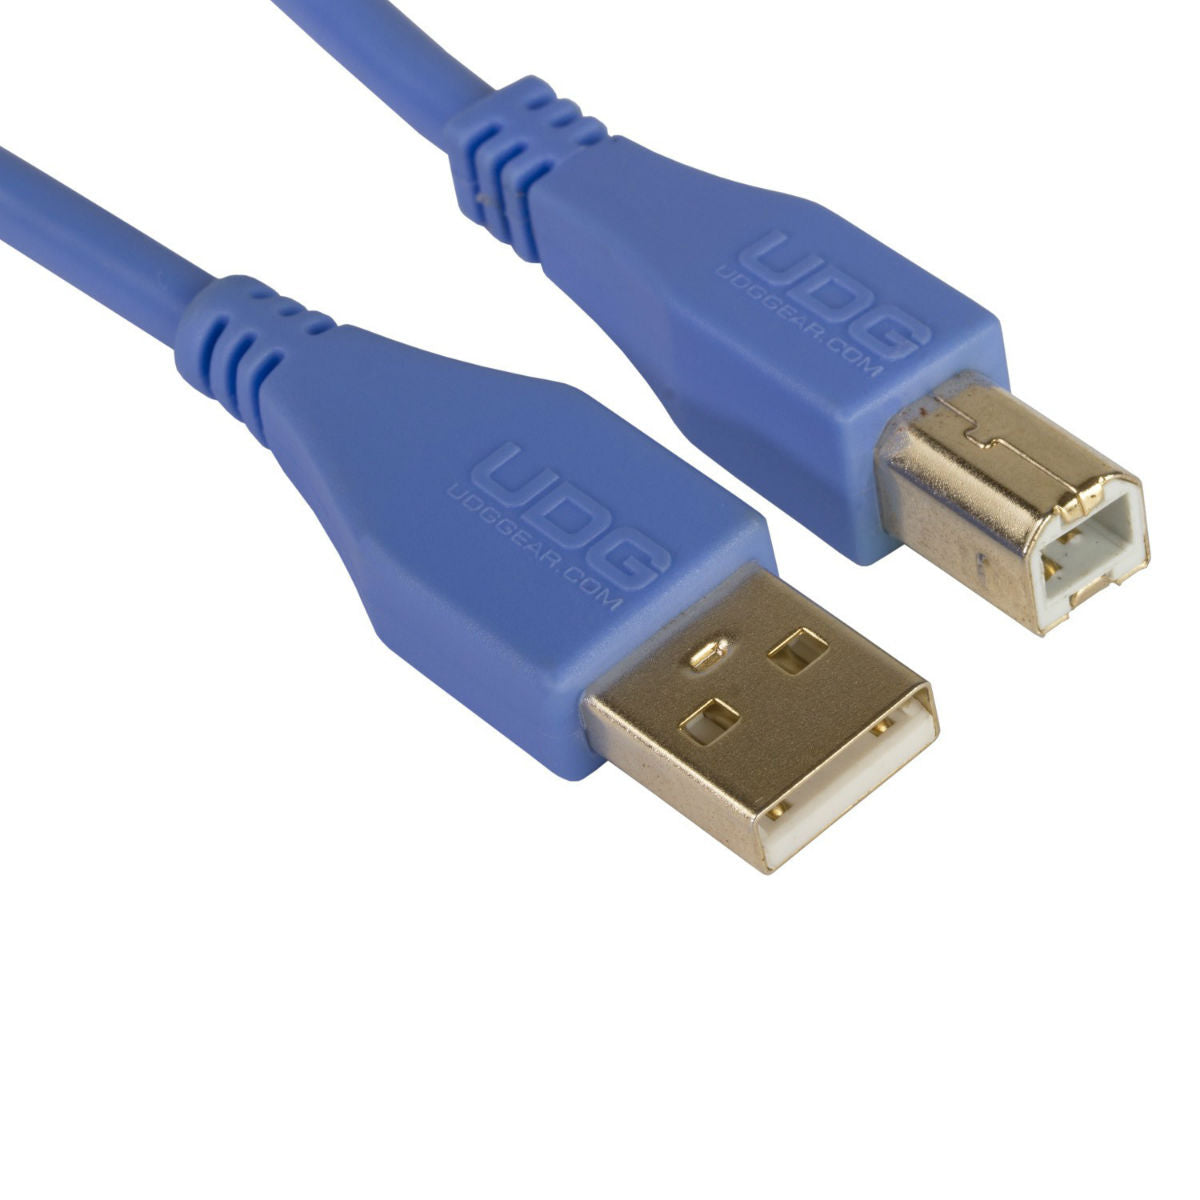 UDG USB Cable A-B 3m Blue U95003LB